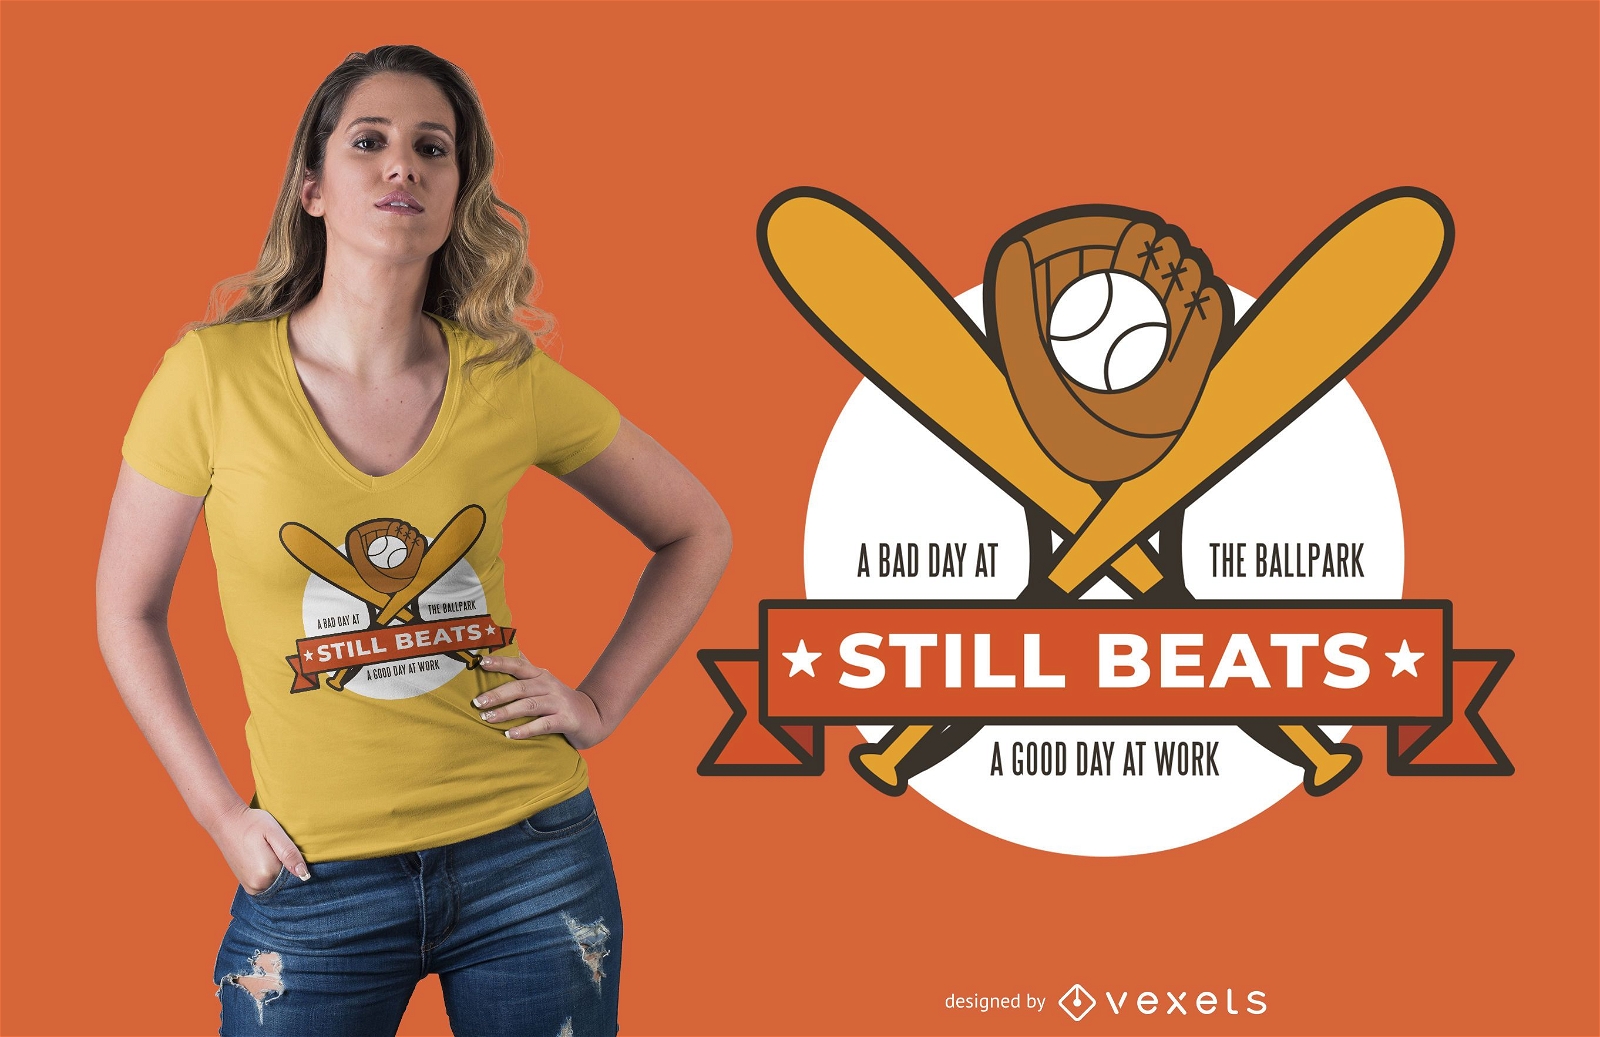 O beisebol ainda supera o design de camisetas